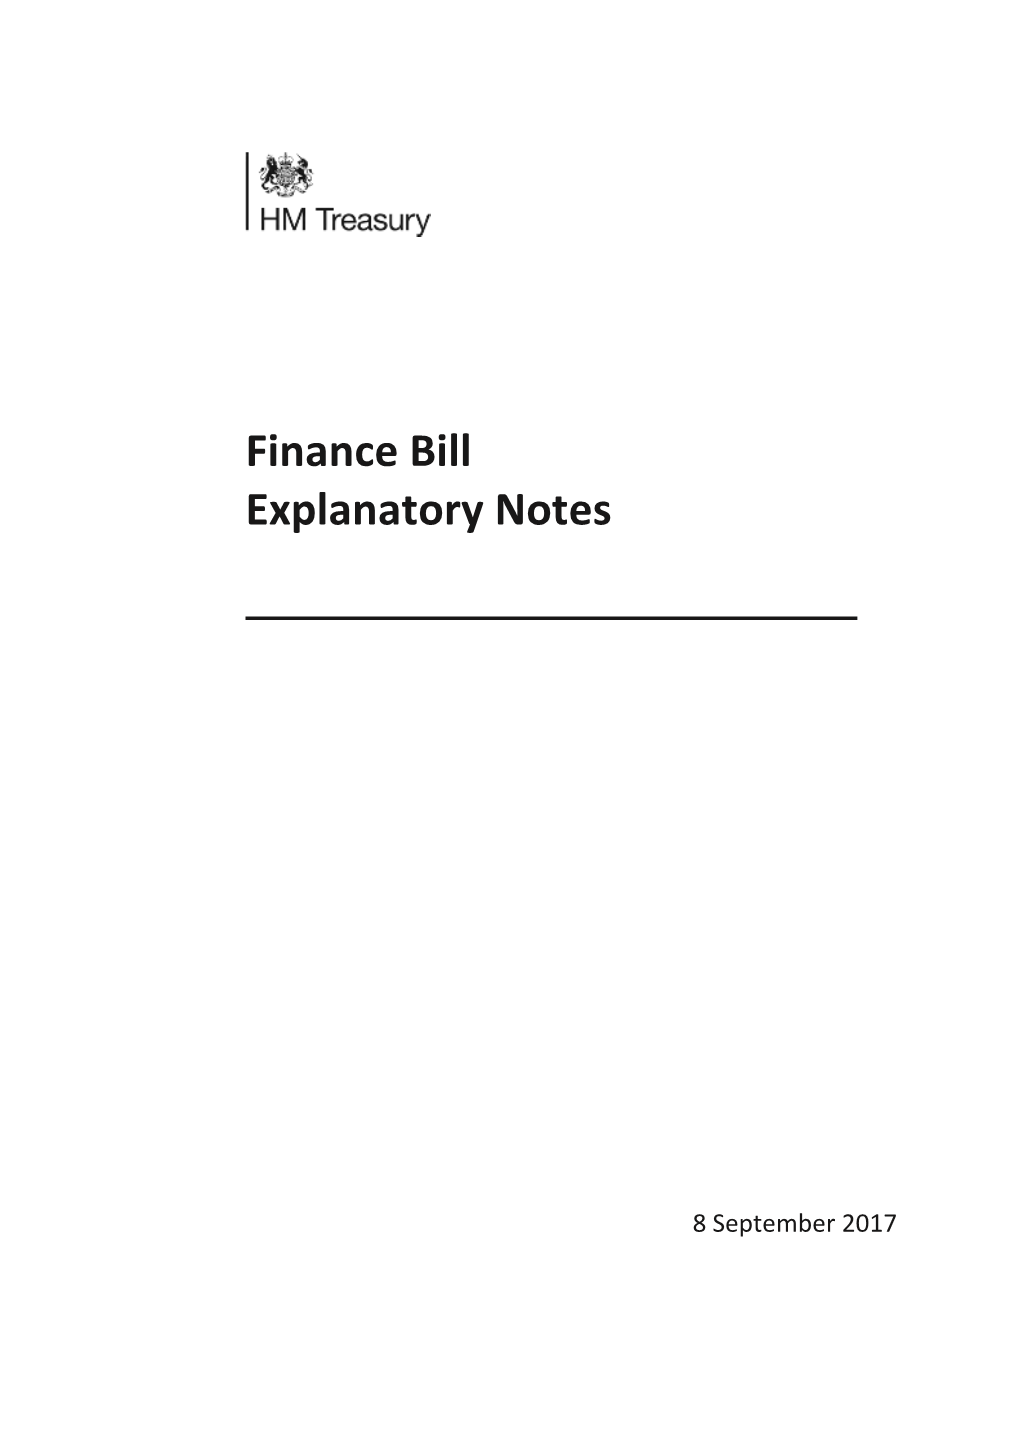 Finance Bill: September 2017 Explanatory Notes